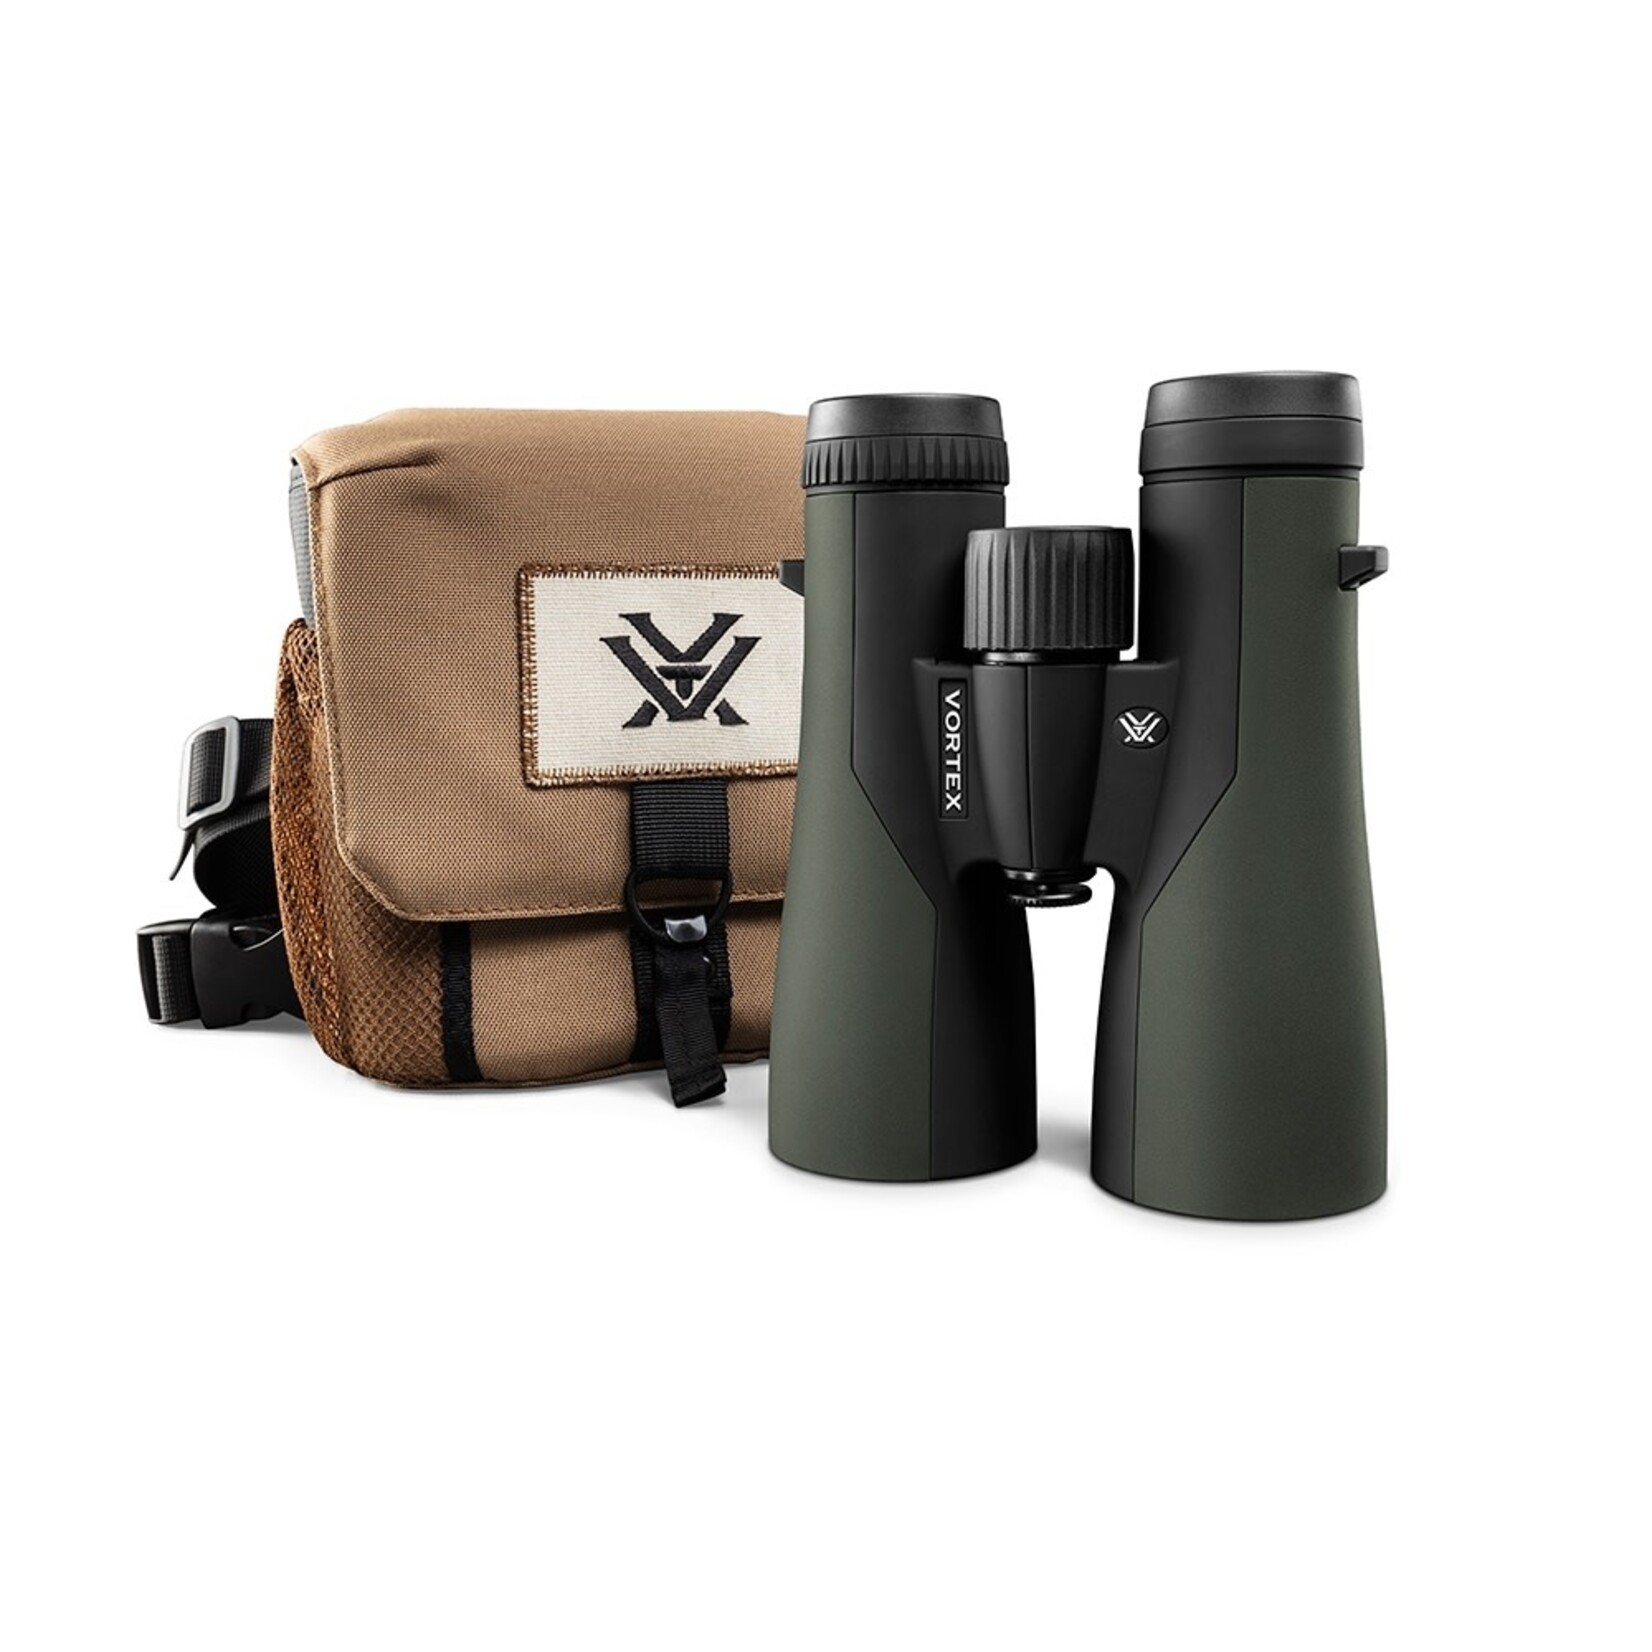 Vortex Vortex Crossfire HD 12x50 Binoculars